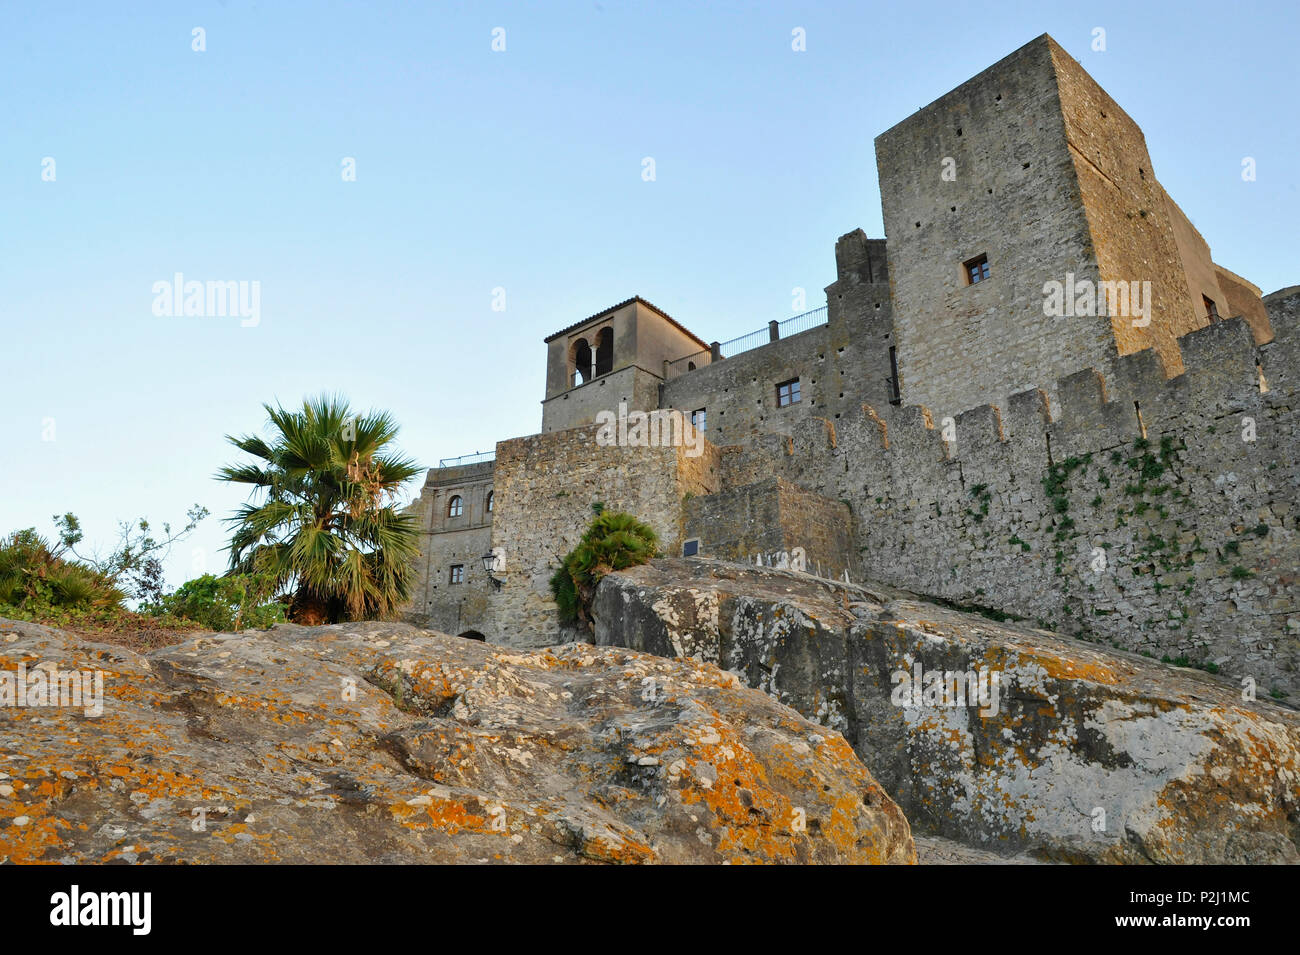 Alte maurische Festung und die Altstadt auf einem Berg, castellar de la Frontera, Andalusien, Spanien Stockfoto